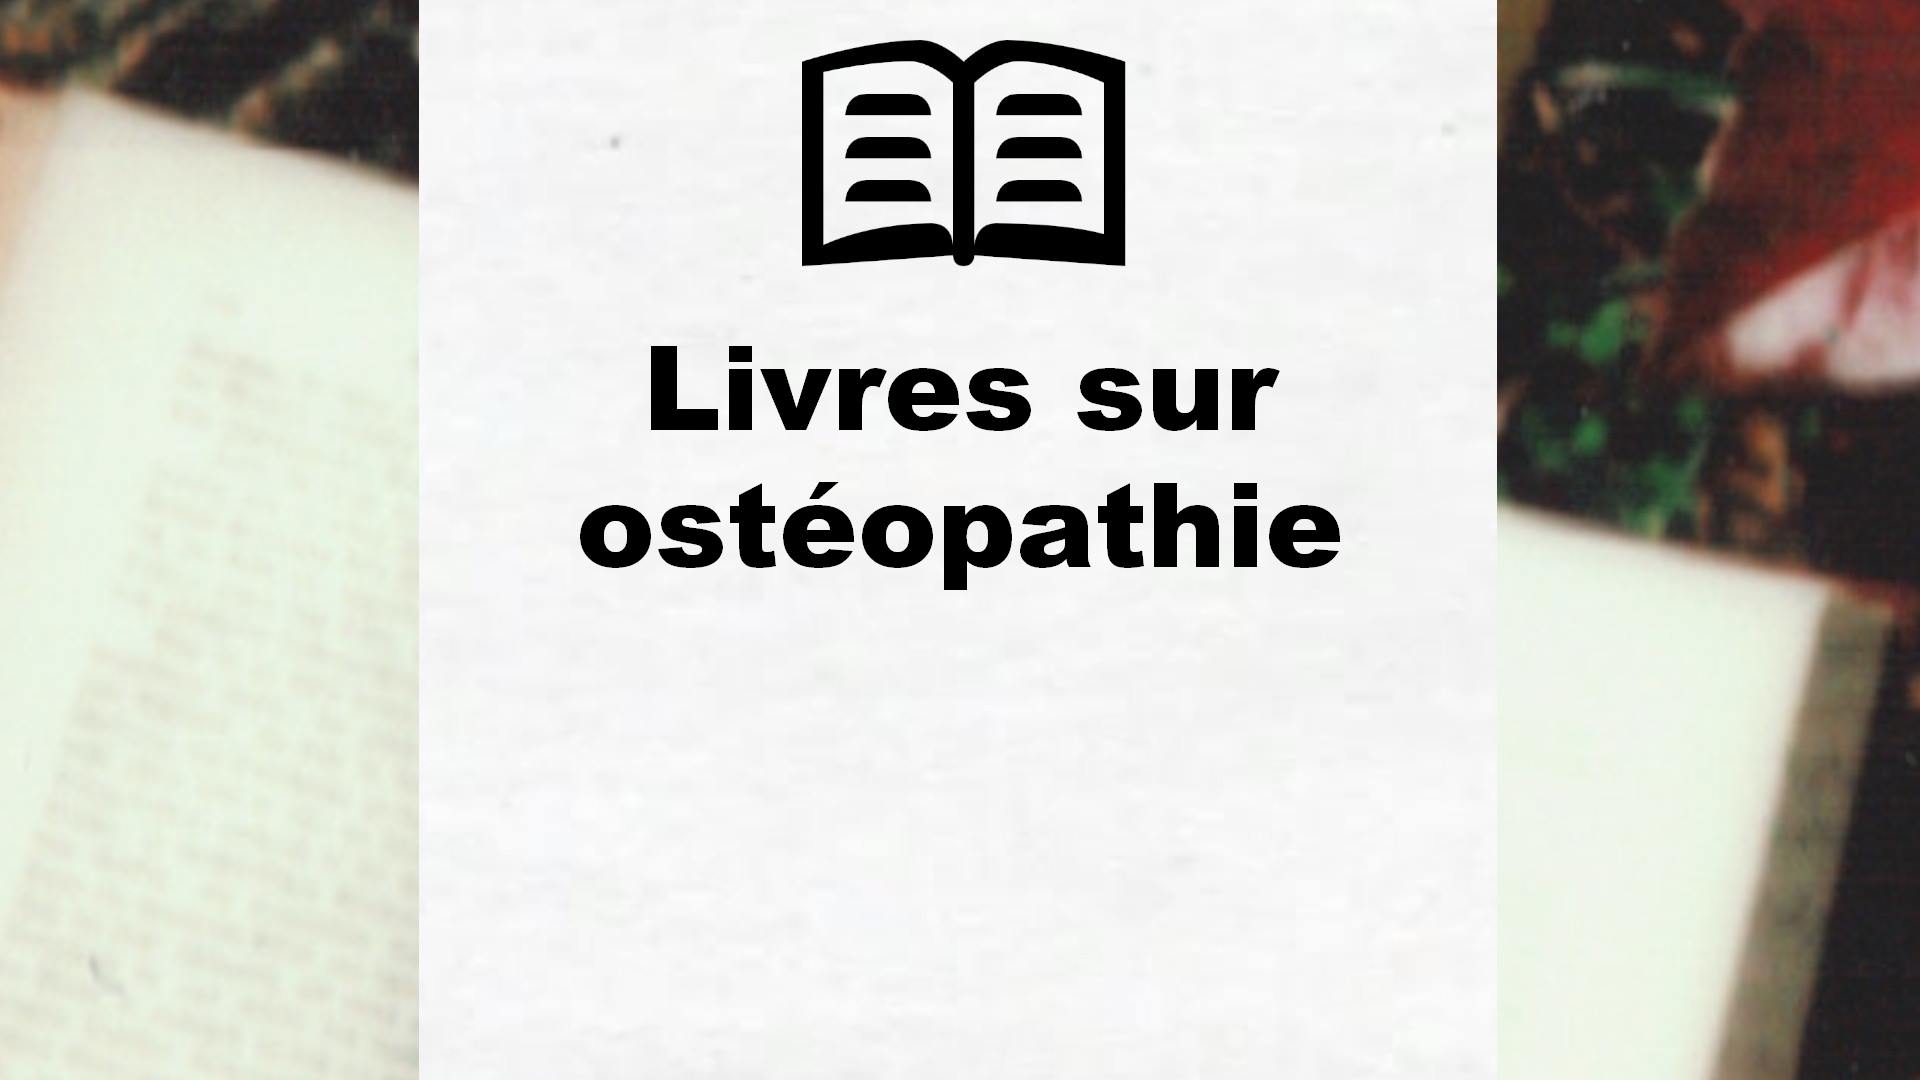 Livres sur ostéopathie